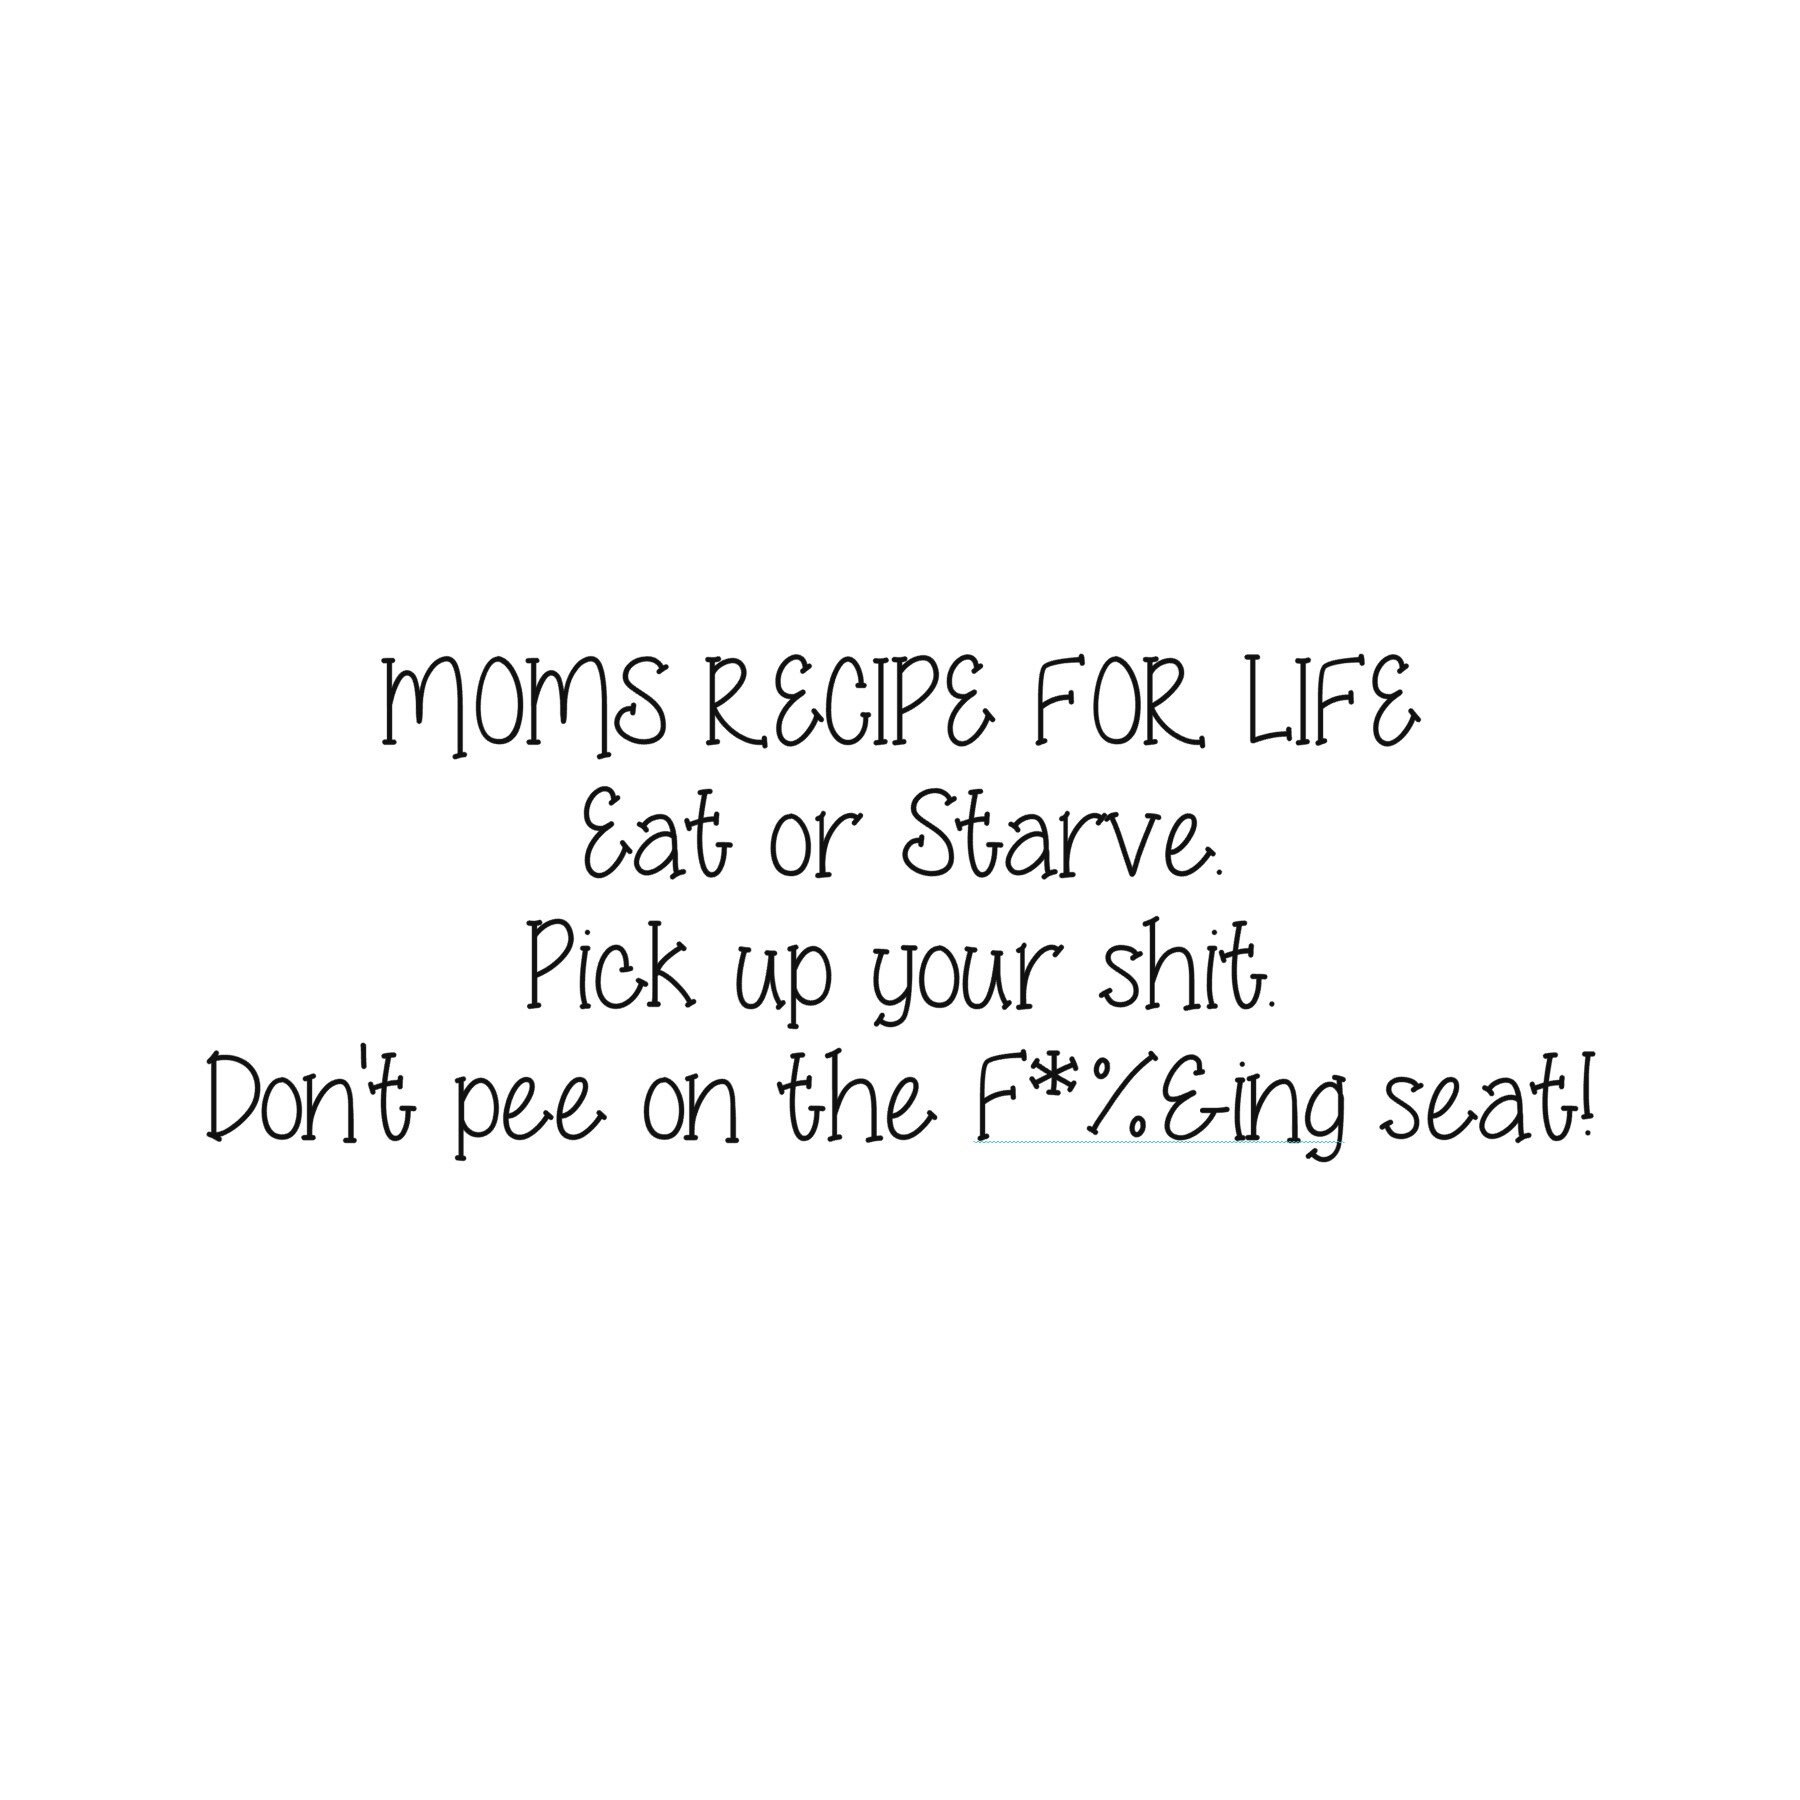 moms recipe for life.jpg